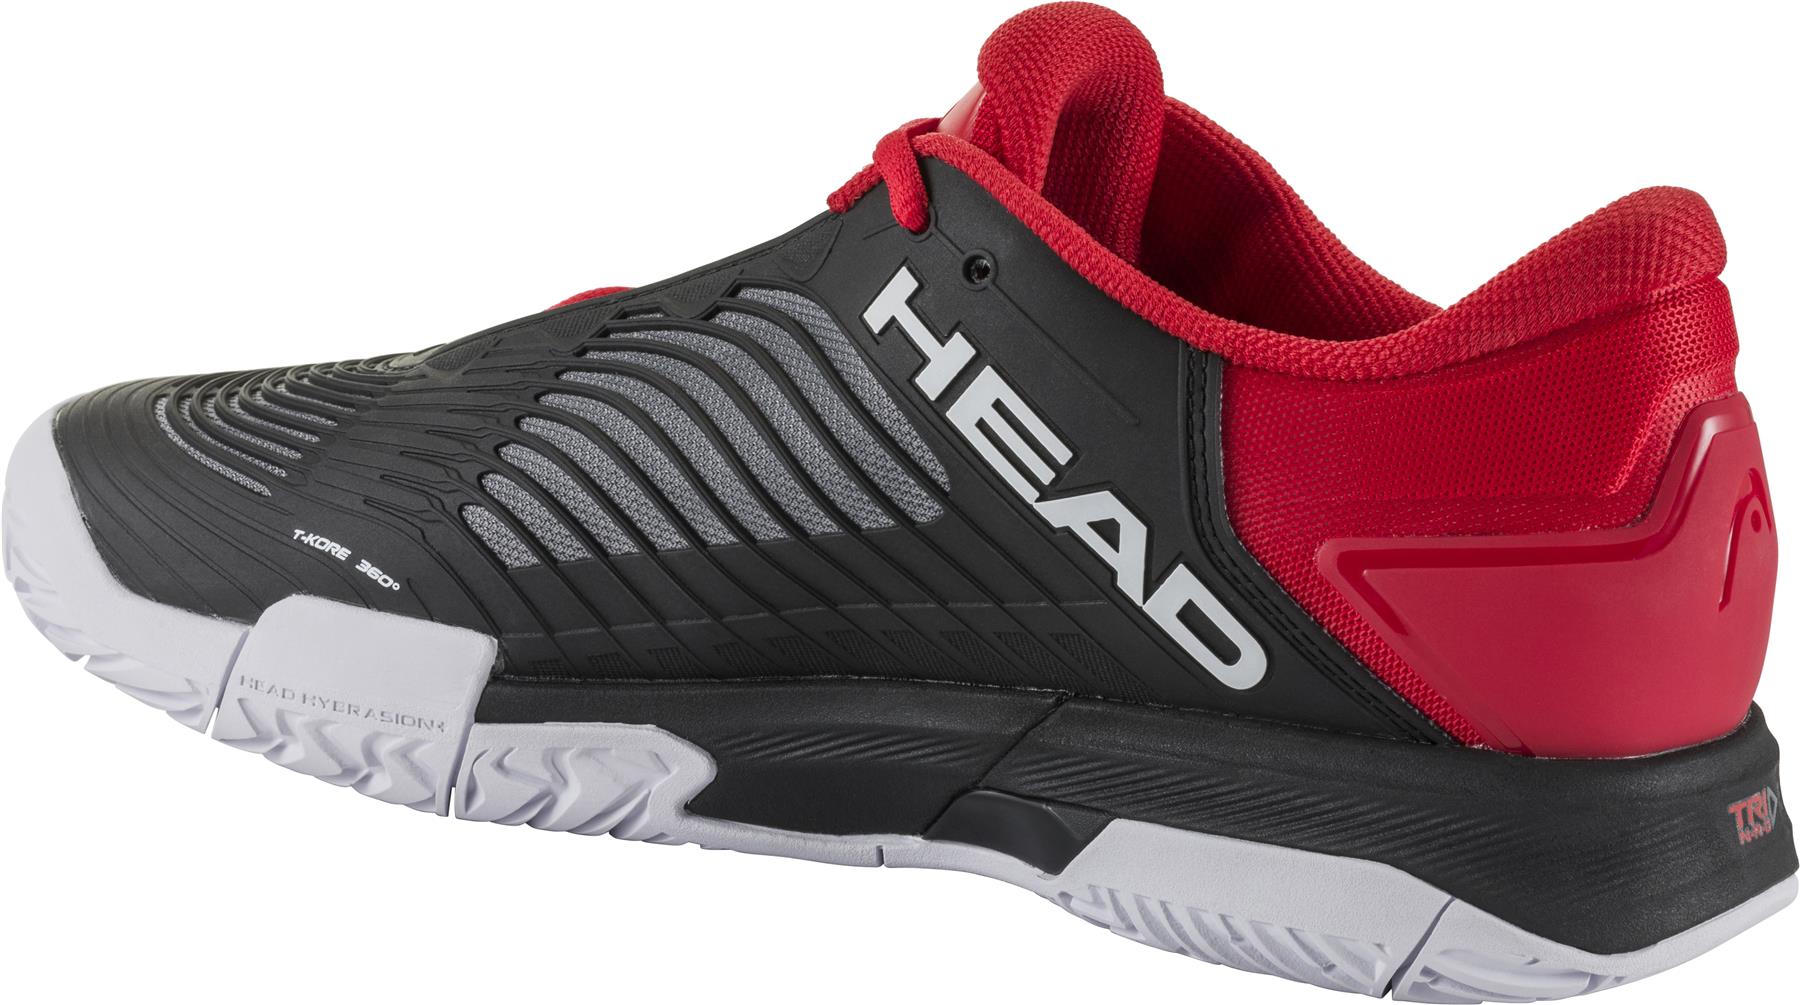 HEAD Revolt Pro 4.5 Mens Tennis Shoes - Black / Red - Left